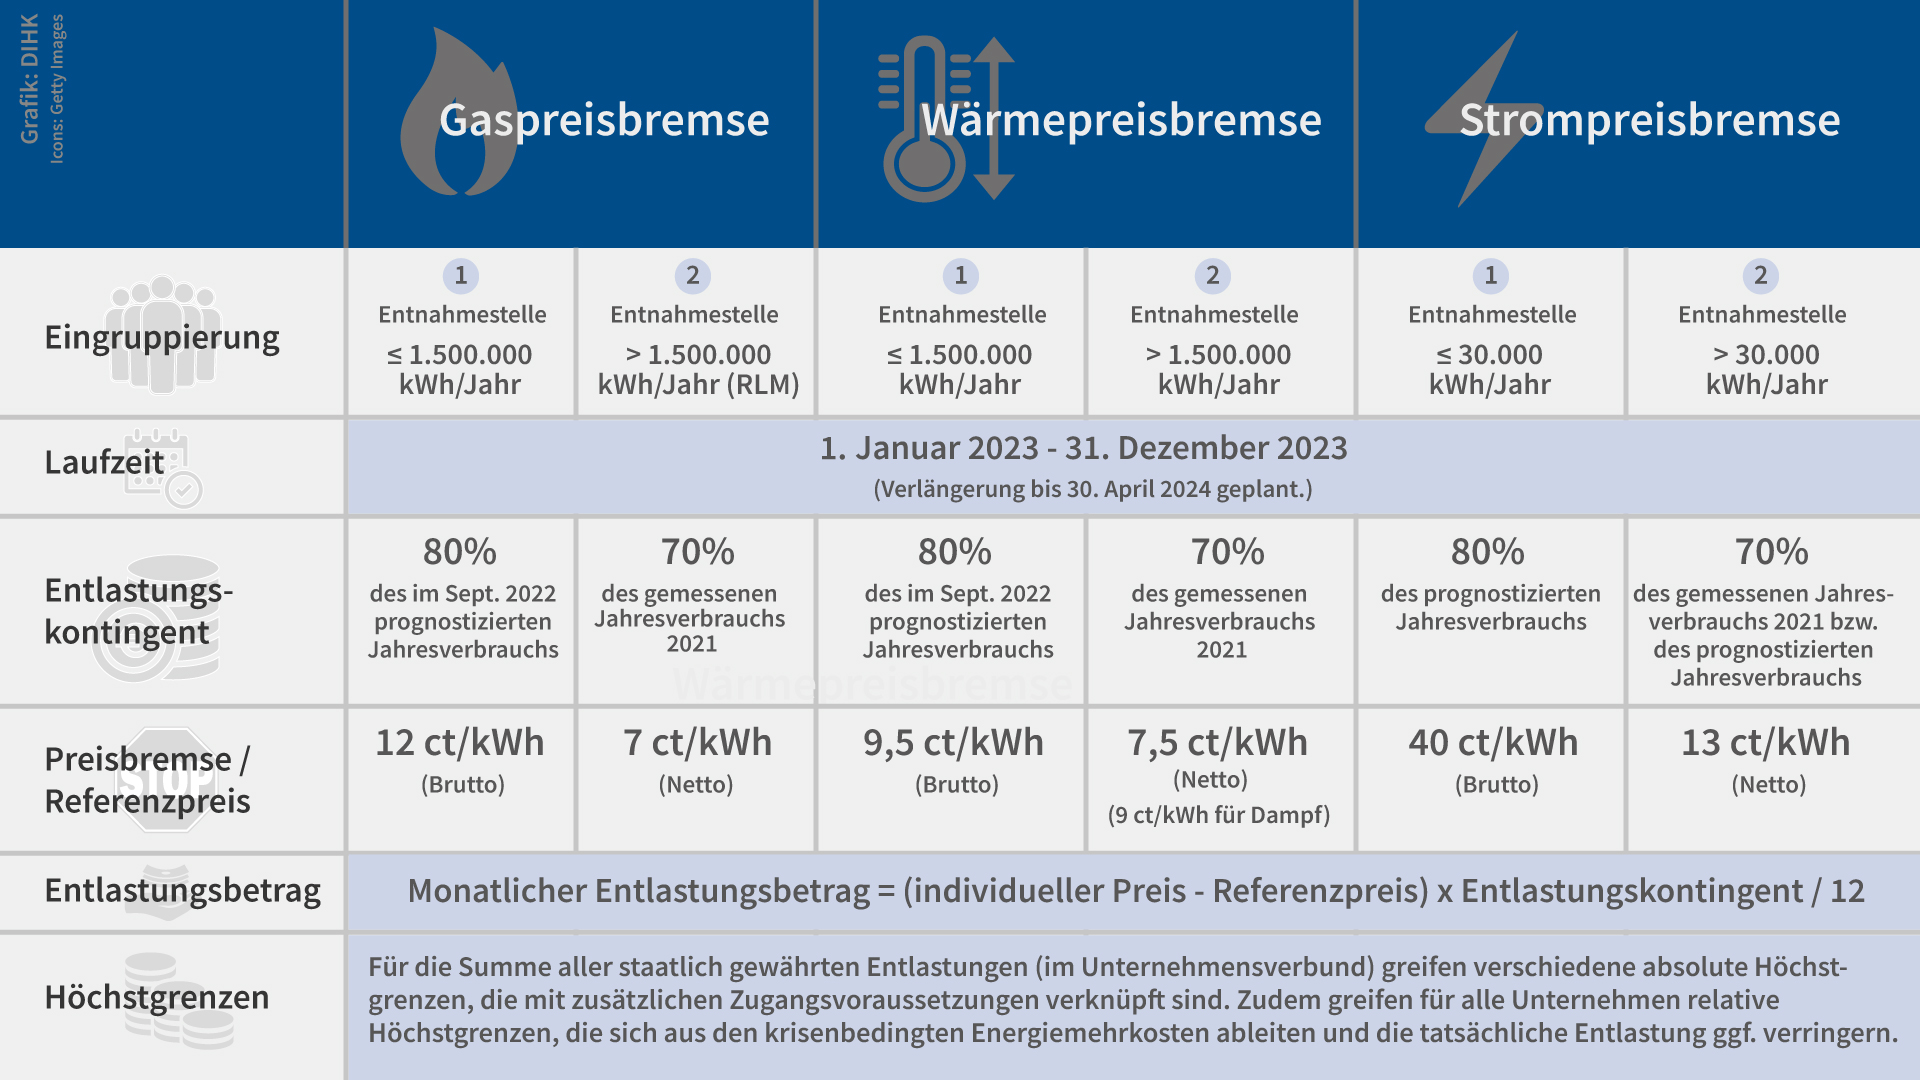 In dieser Infografik erklärt die Deutsche Industrie- und Handelskammer (DIHK) die Berechnung von Gaspreisbremse, Wärmepreisbremse und Strompreisbremse.